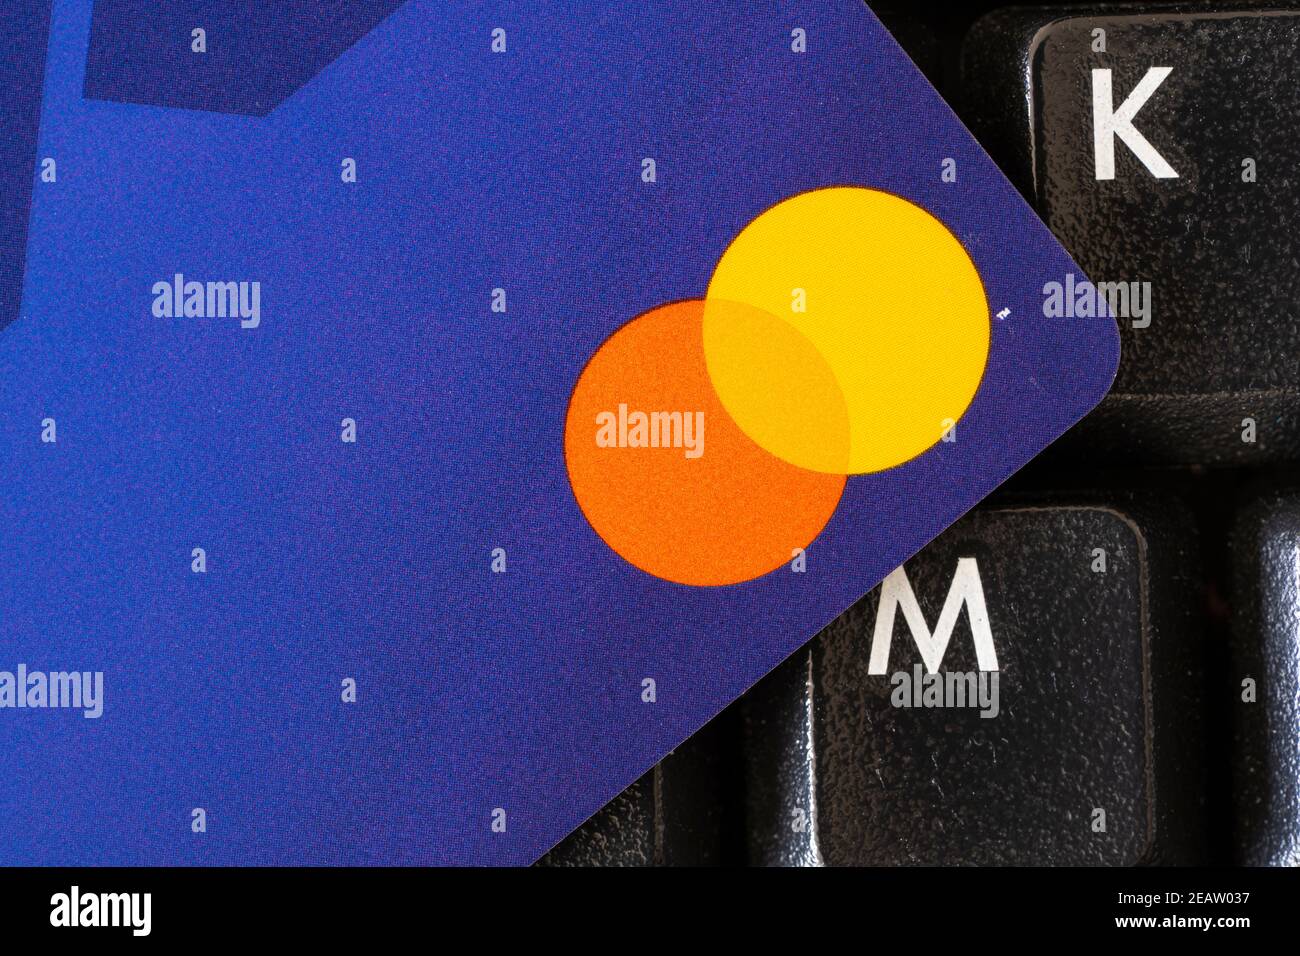 Un gros plan du coin d'une carte de crédit minimaliste sans numéro de carte et le logo Mastercard, reposant sur un clavier. Thème - dette, société sans espèces Banque D'Images